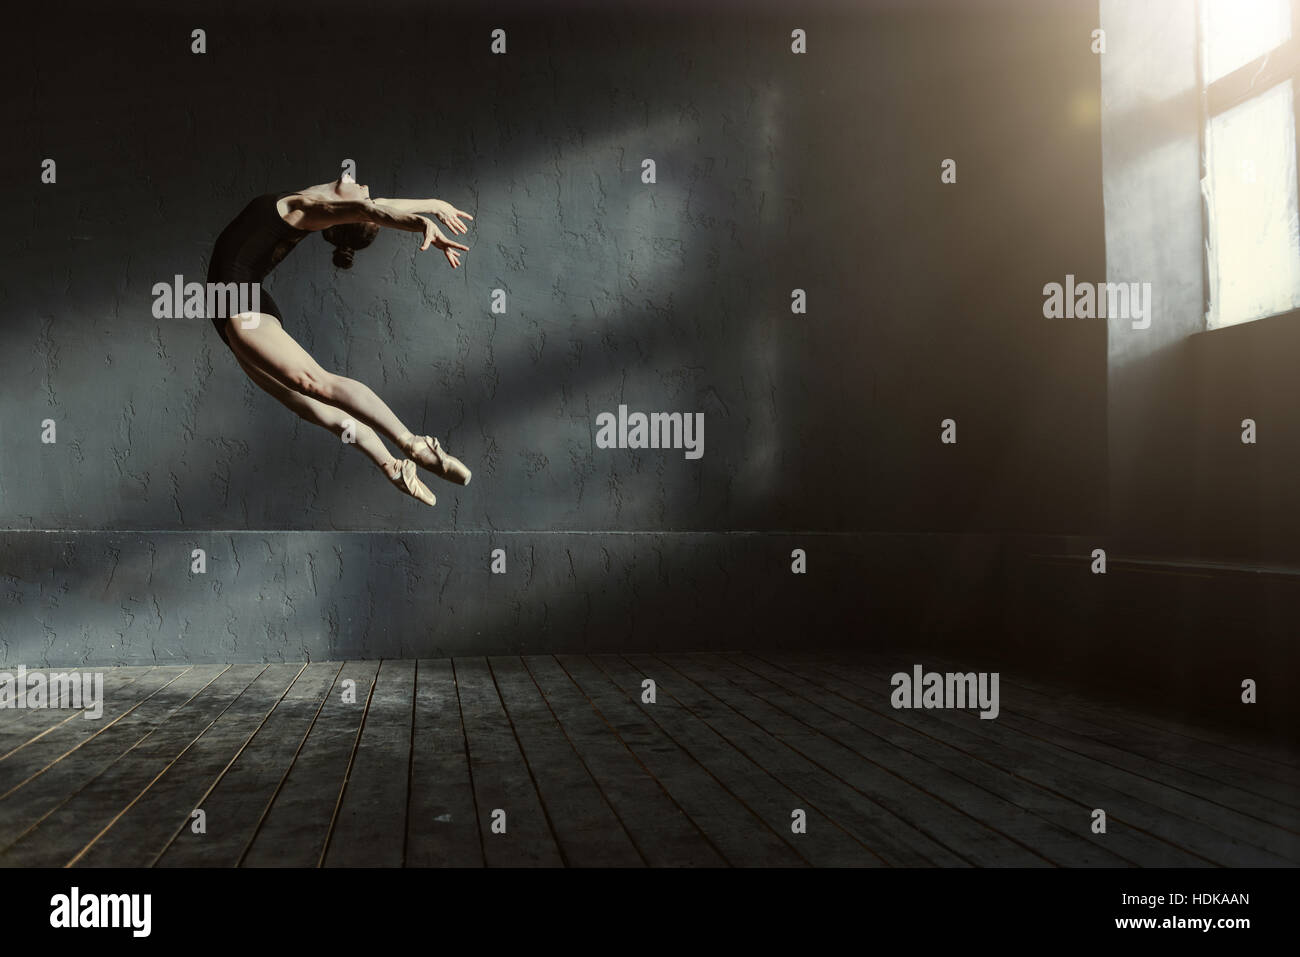 Danseur de ballet professionnel effectuant dans l'obscurité éclairée prix Banque D'Images